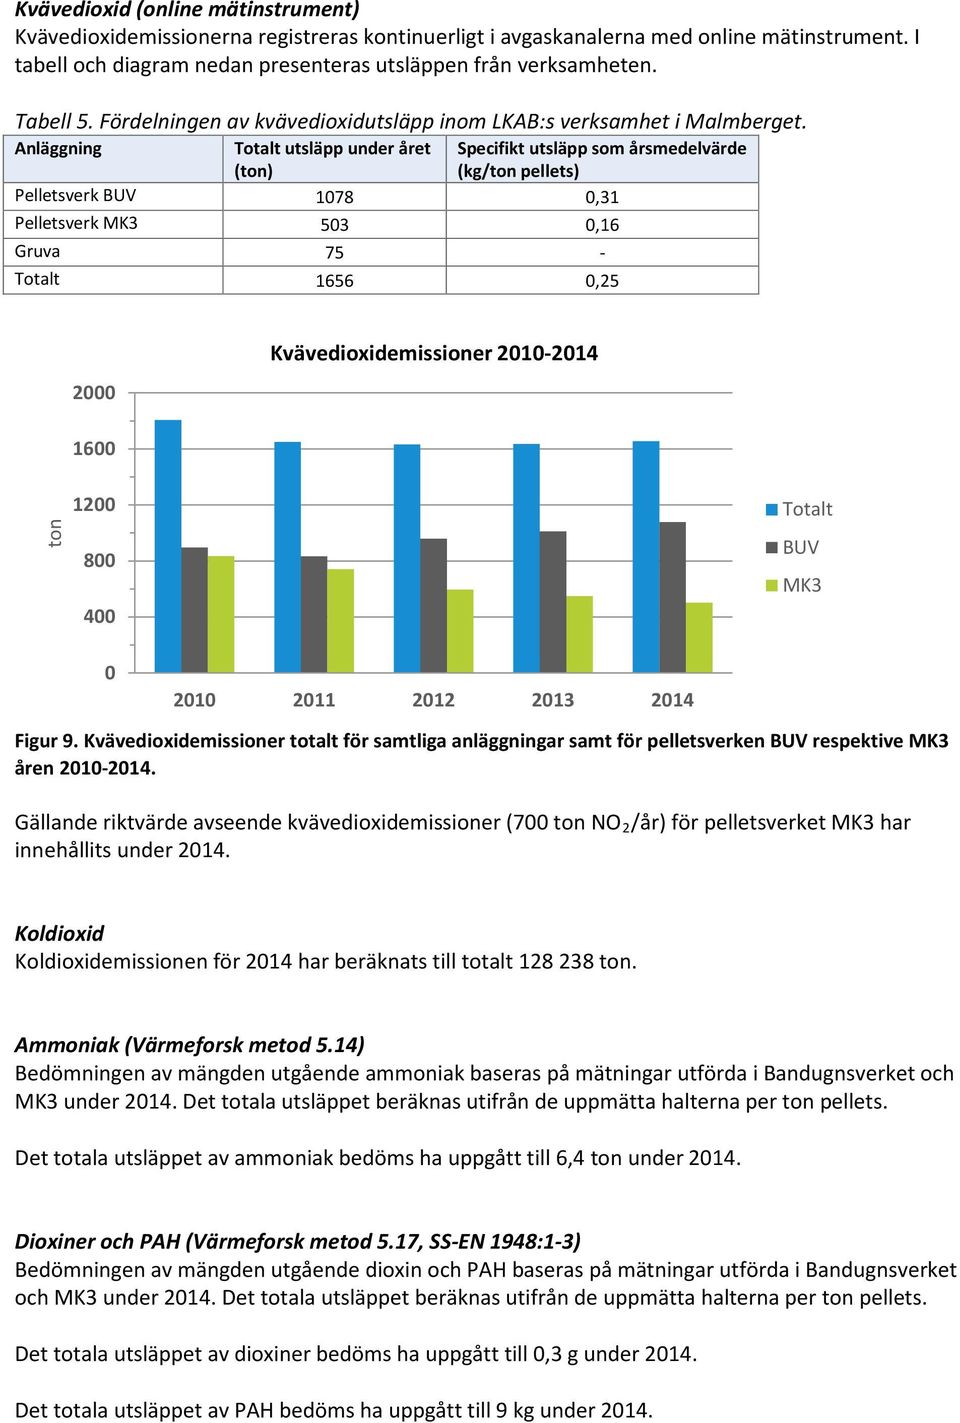 Anläggning Totalt utsläpp under året (ton) Specifikt utsläpp som årsmedelvärde (kg/ton pellets) Pelletsverk BUV 1078 0,31 Pelletsverk MK3 503 0,16 Gruva 75 - Totalt 1656 0,25 2000